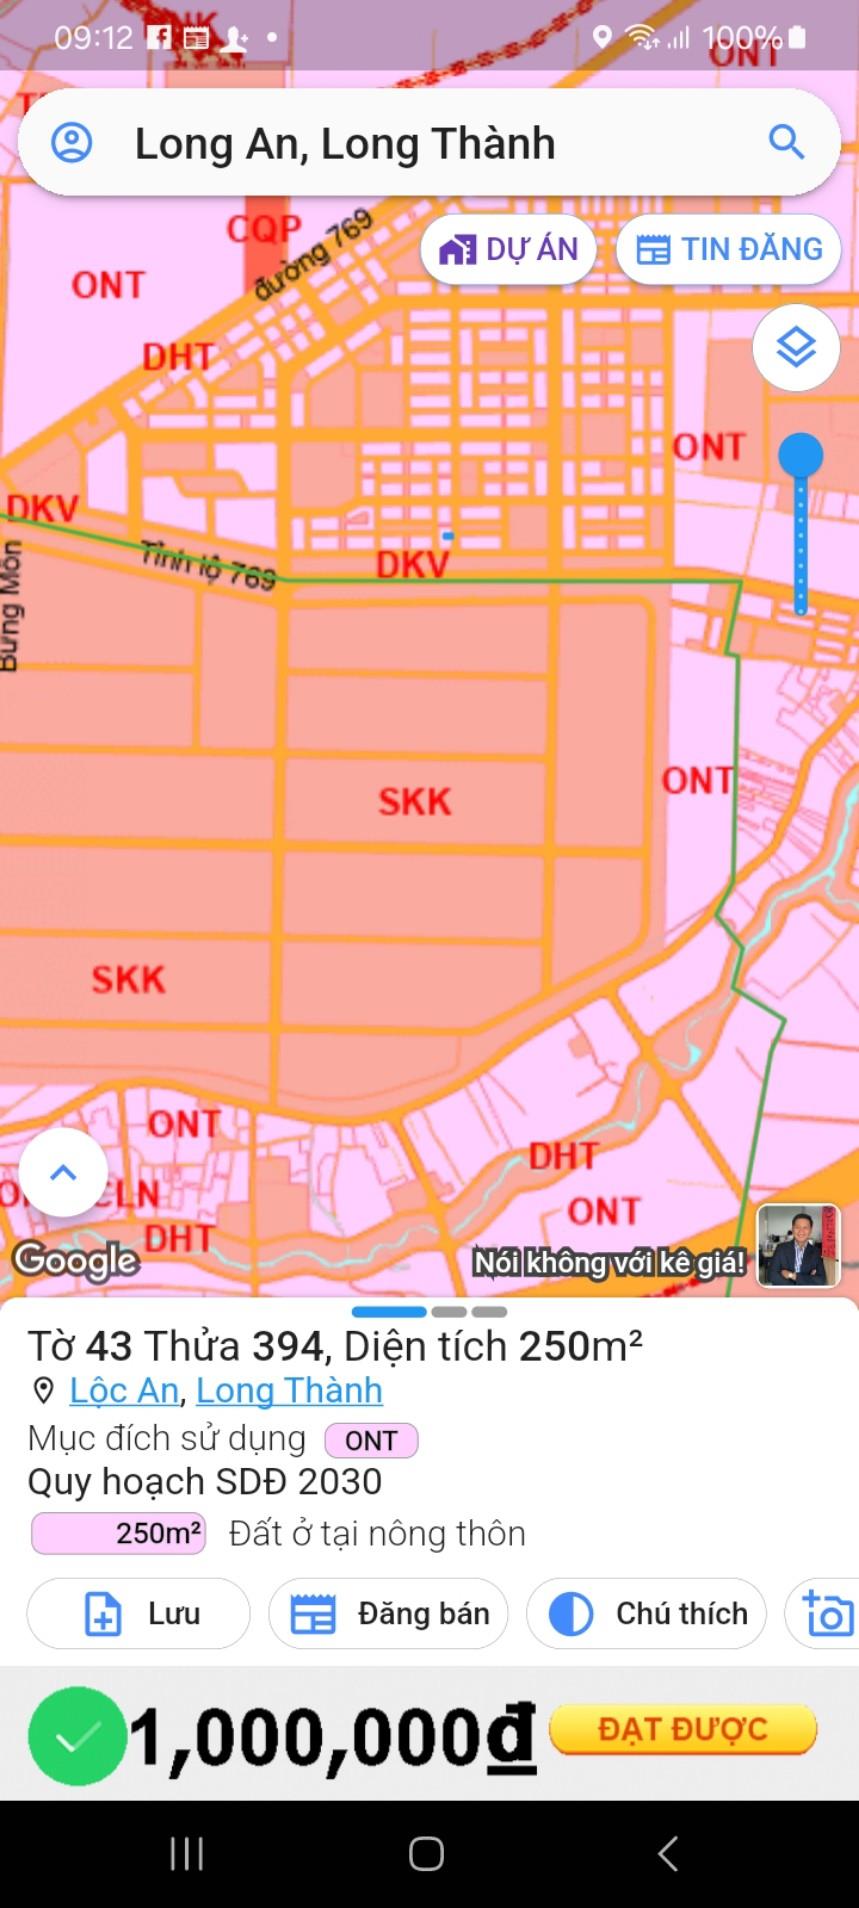 Tái định cư Sân bay Quốc tế Long Thành, Lộc An - Bình Sơn. Trục chính D10, 250m2, 7 tỷ Lh 0917511235 - Ảnh 3